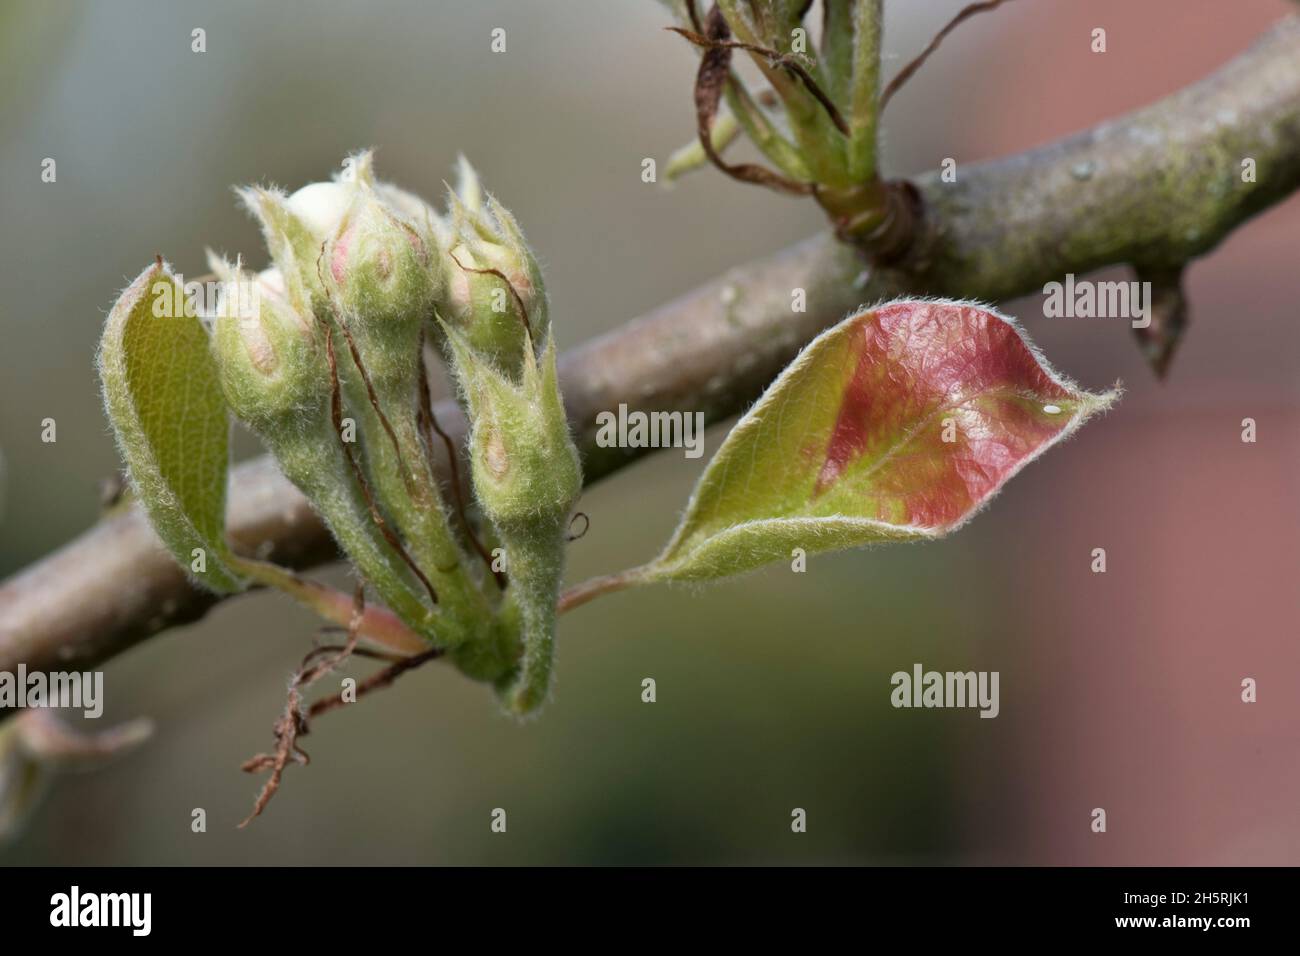 Bourgeons de fleur de poire avec de très jeunes feuilles sur un verger fruit variété Conférence début printemps, Berkshire, avril Banque D'Images